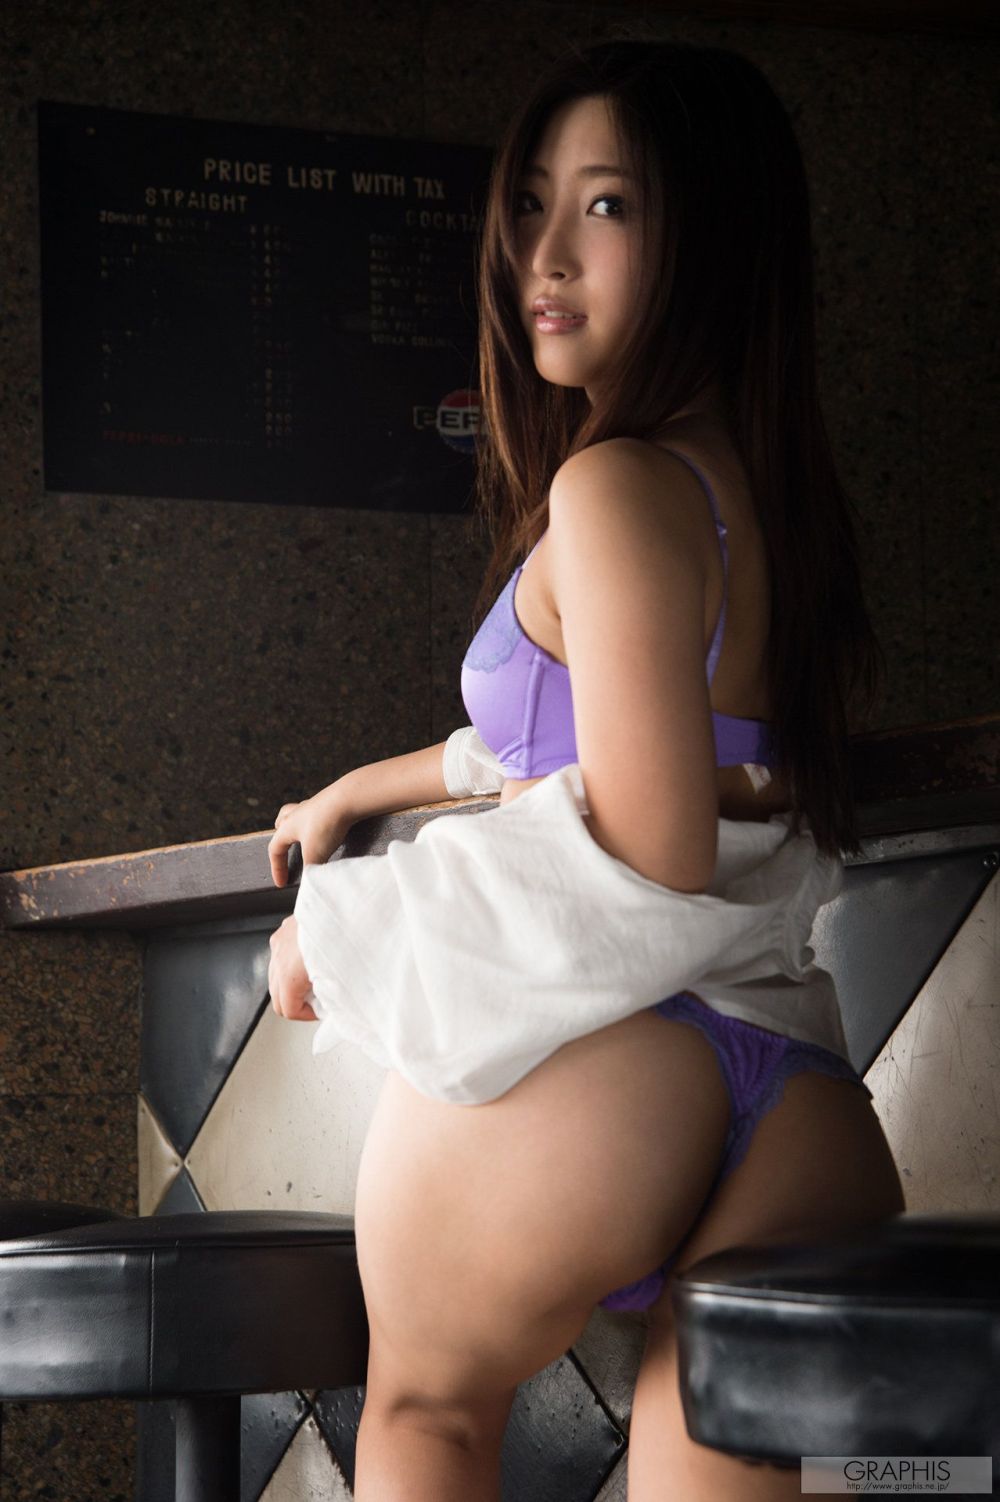 Sumire Mizukawa Sexy and Hottest Photos , Latest Pics